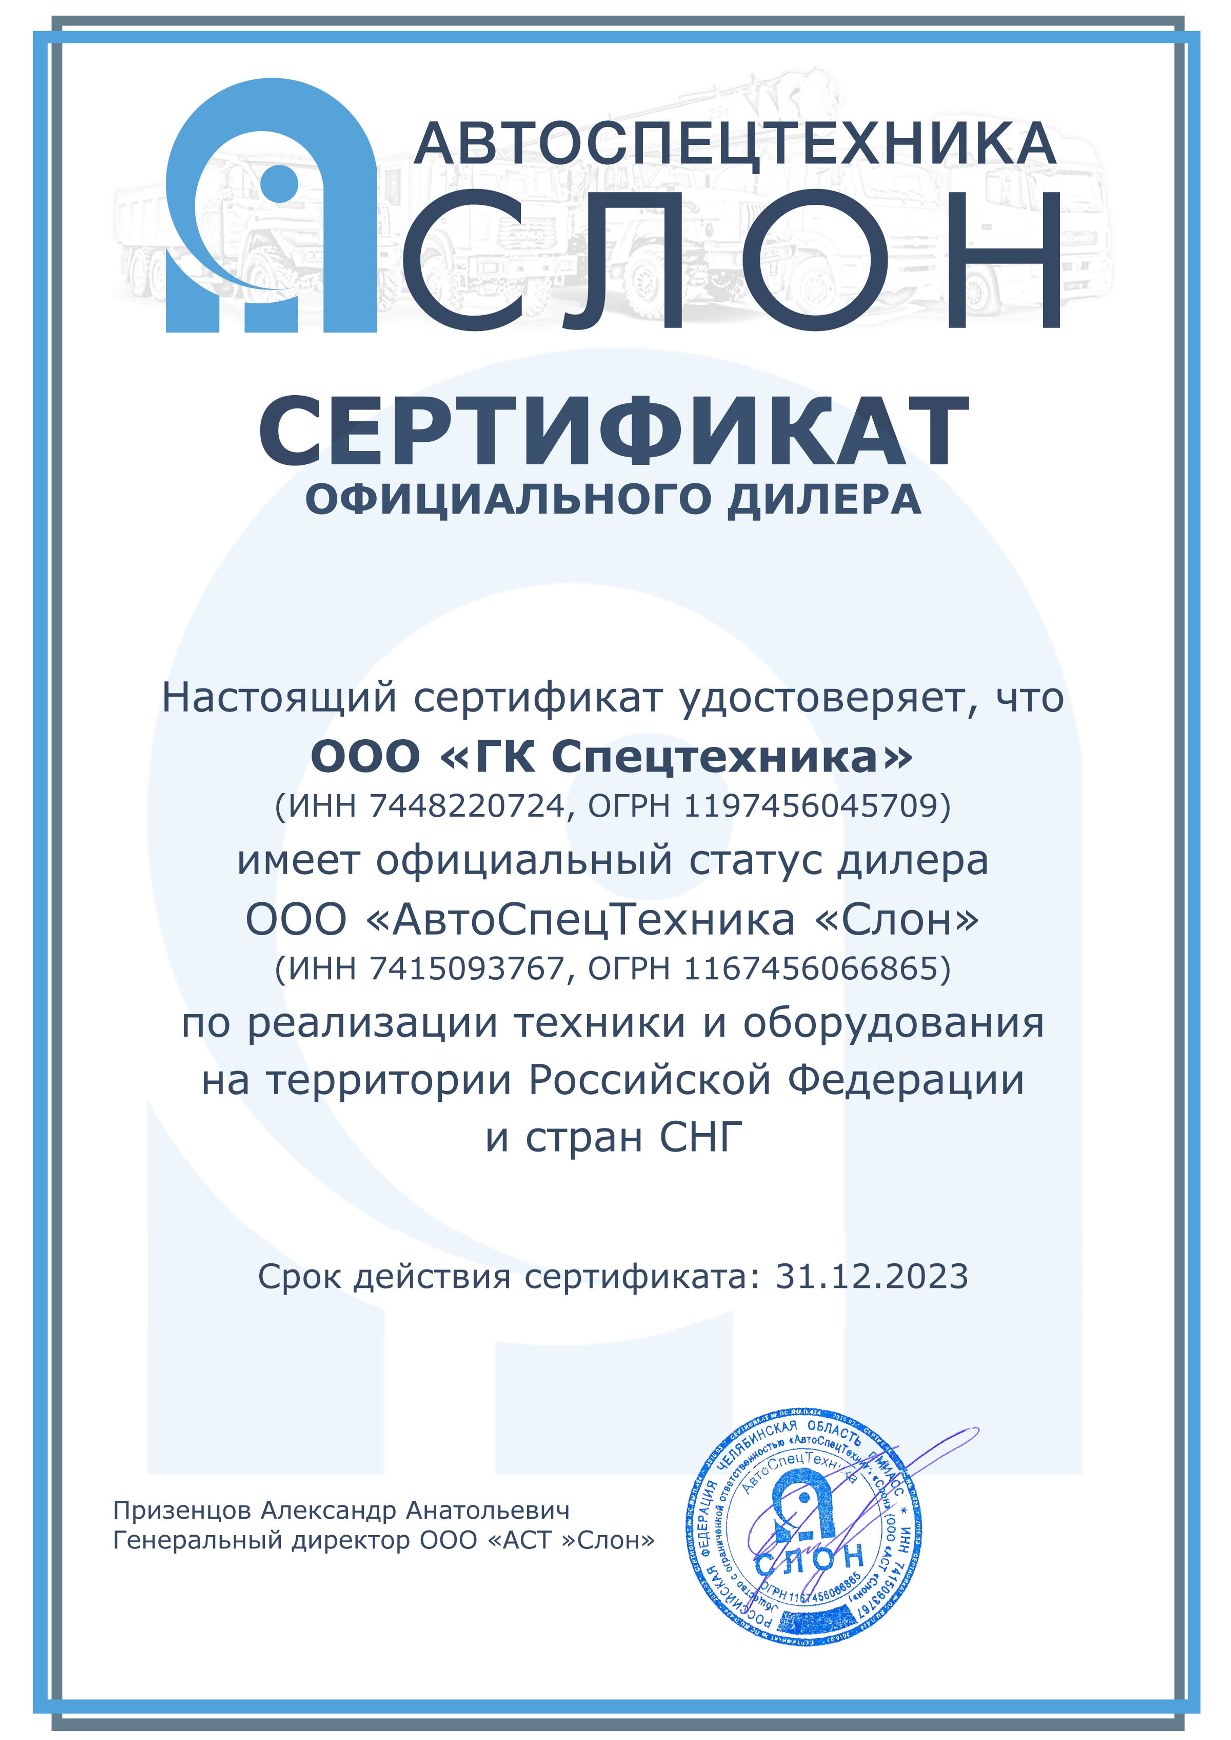 Сертификат дилера ООО «АвтоСпецТехника Слон» от 2023 г.